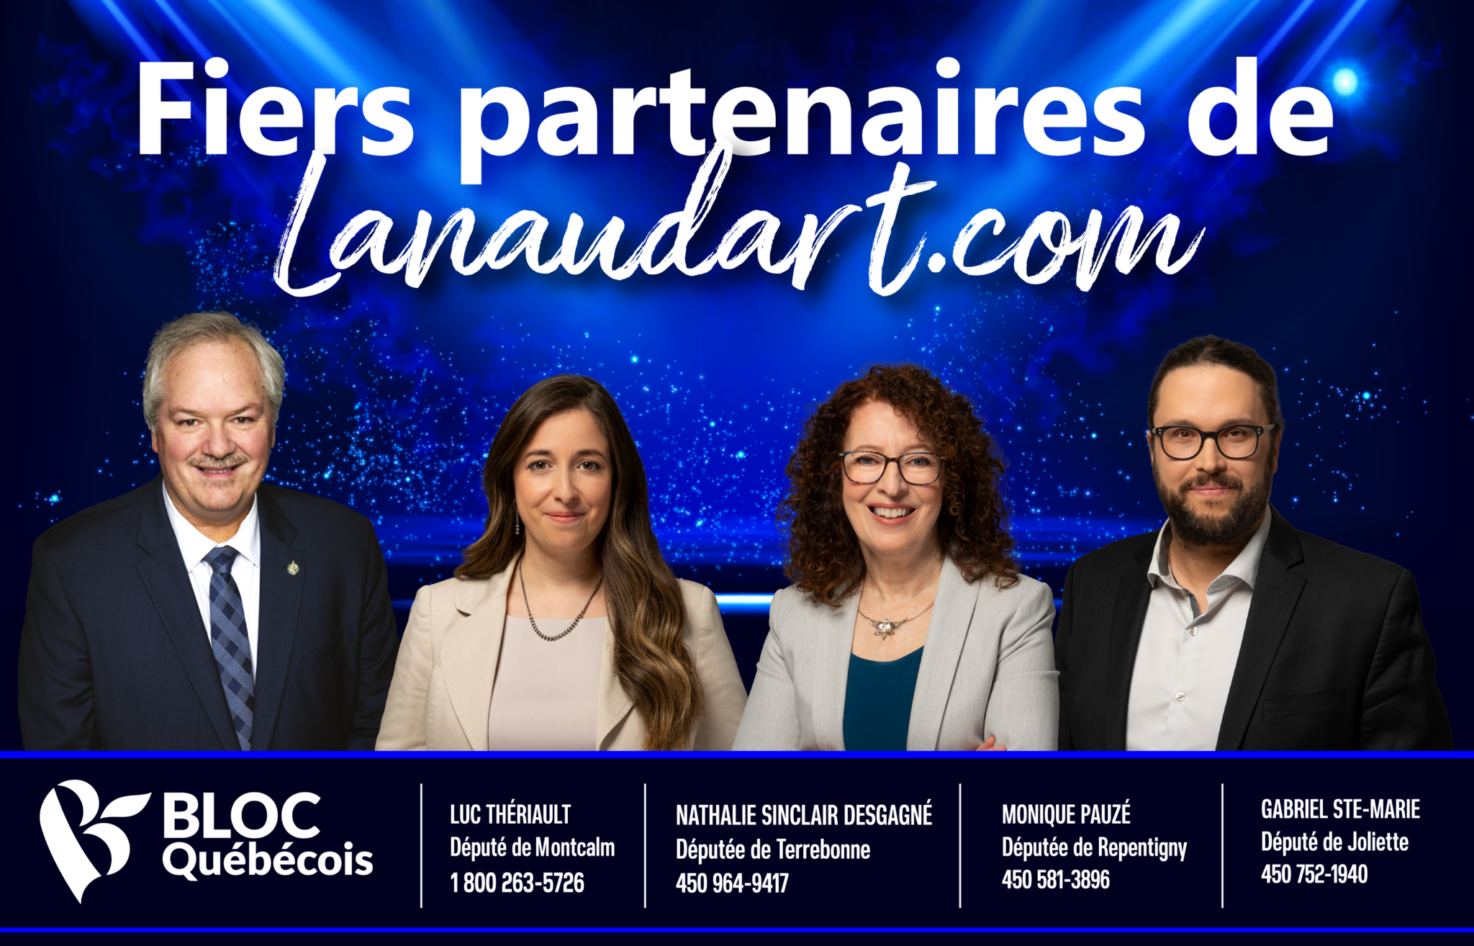 Lanaudart/Publicité Bloc Québécois 2023